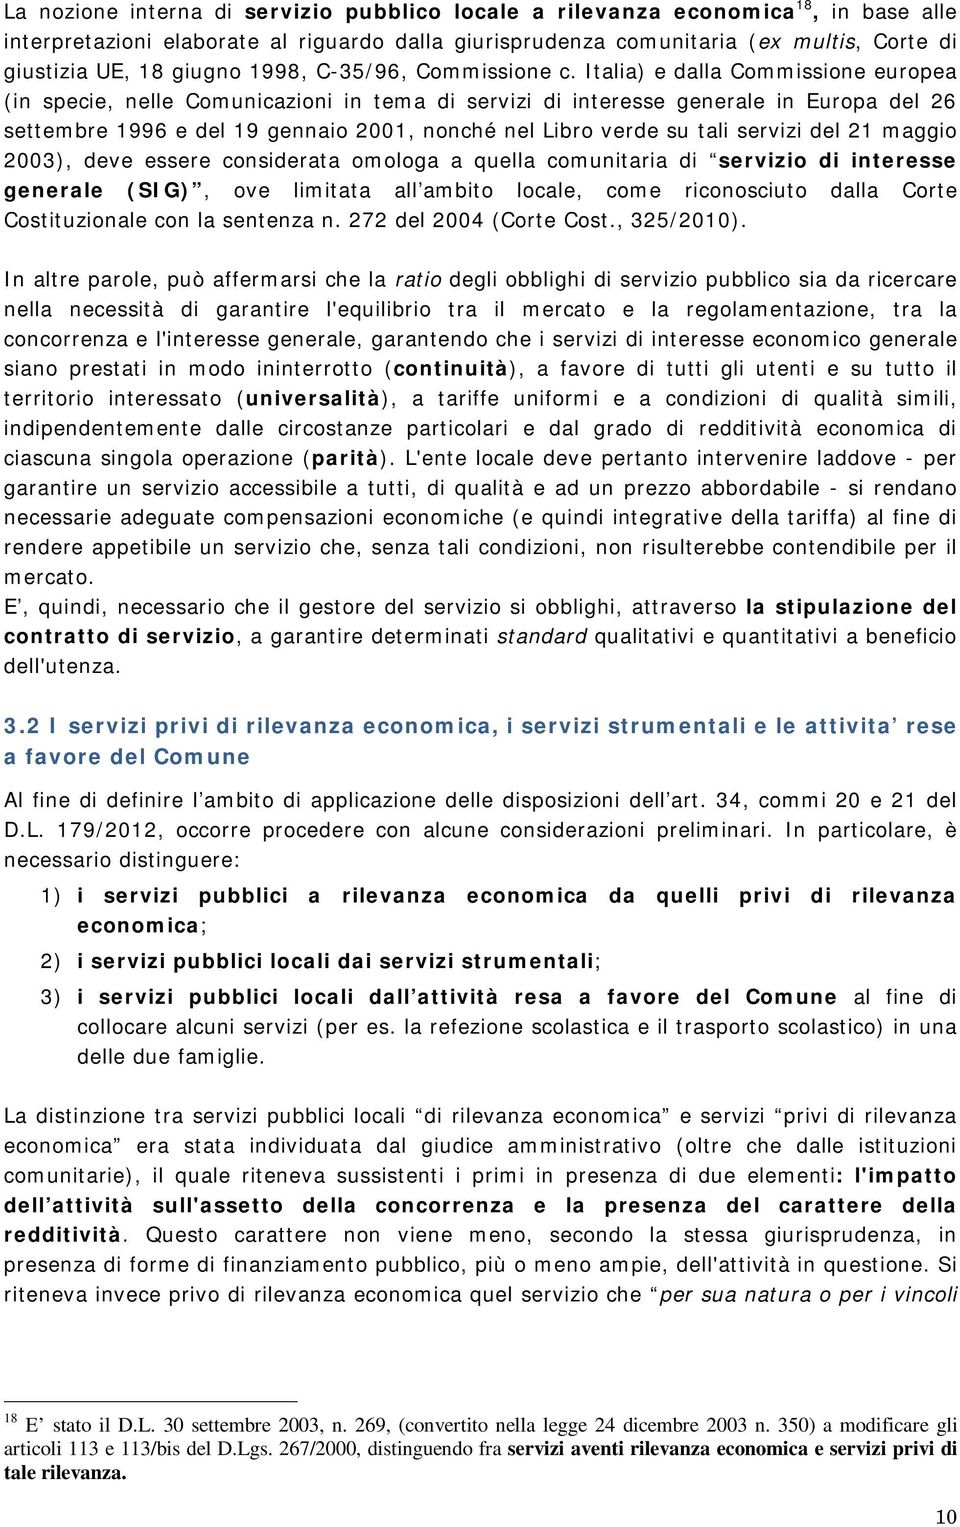 Italia) e dalla Commissione europea (in specie, nelle Comunicazioni in tema di servizi di interesse generale in Europa del 26 settembre 1996 e del 19 gennaio 2001, nonché nel Libro verde su tali